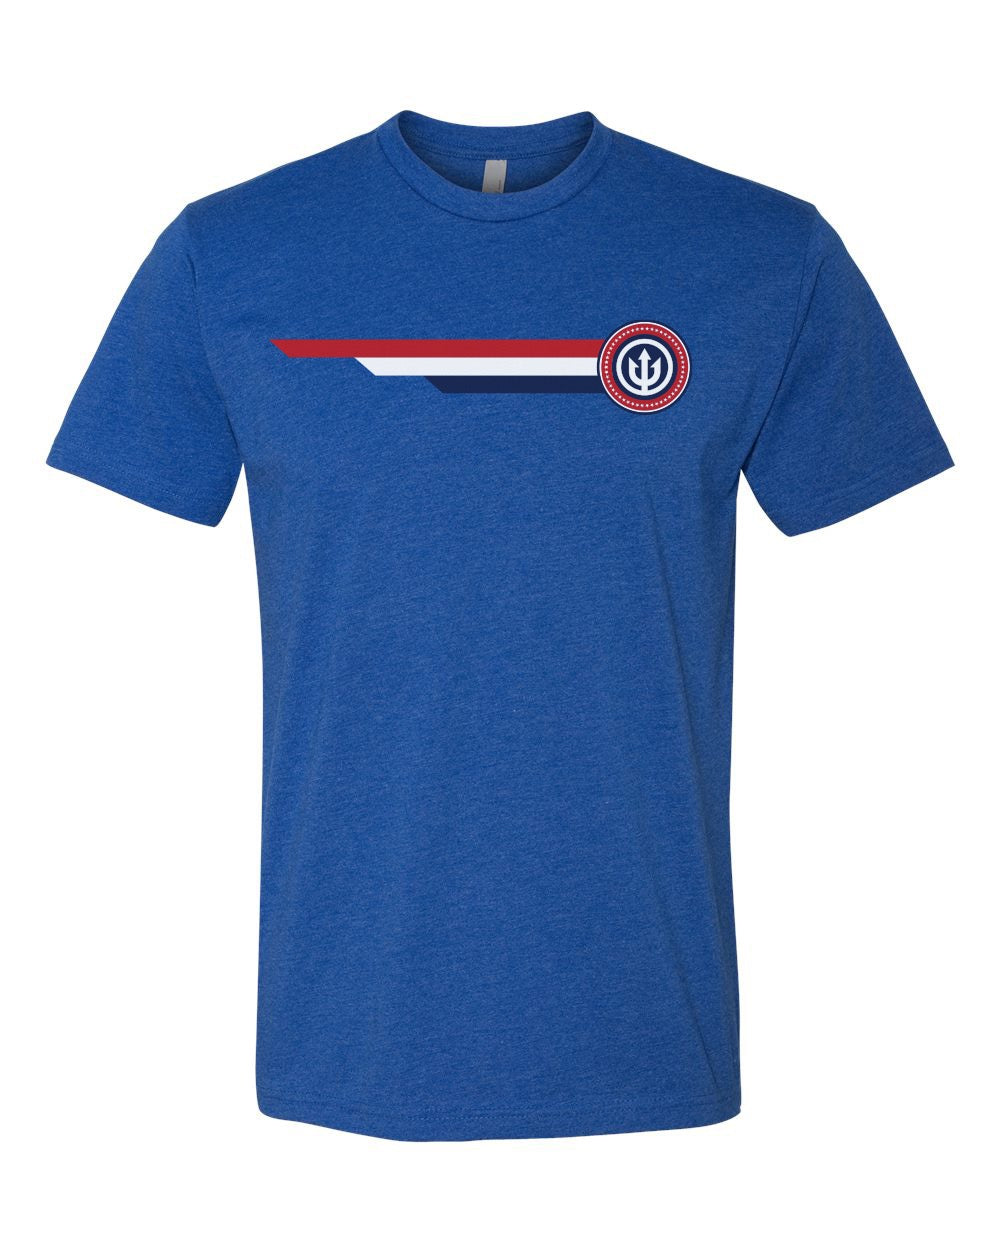 The Cap’n Patriotic t-shirt